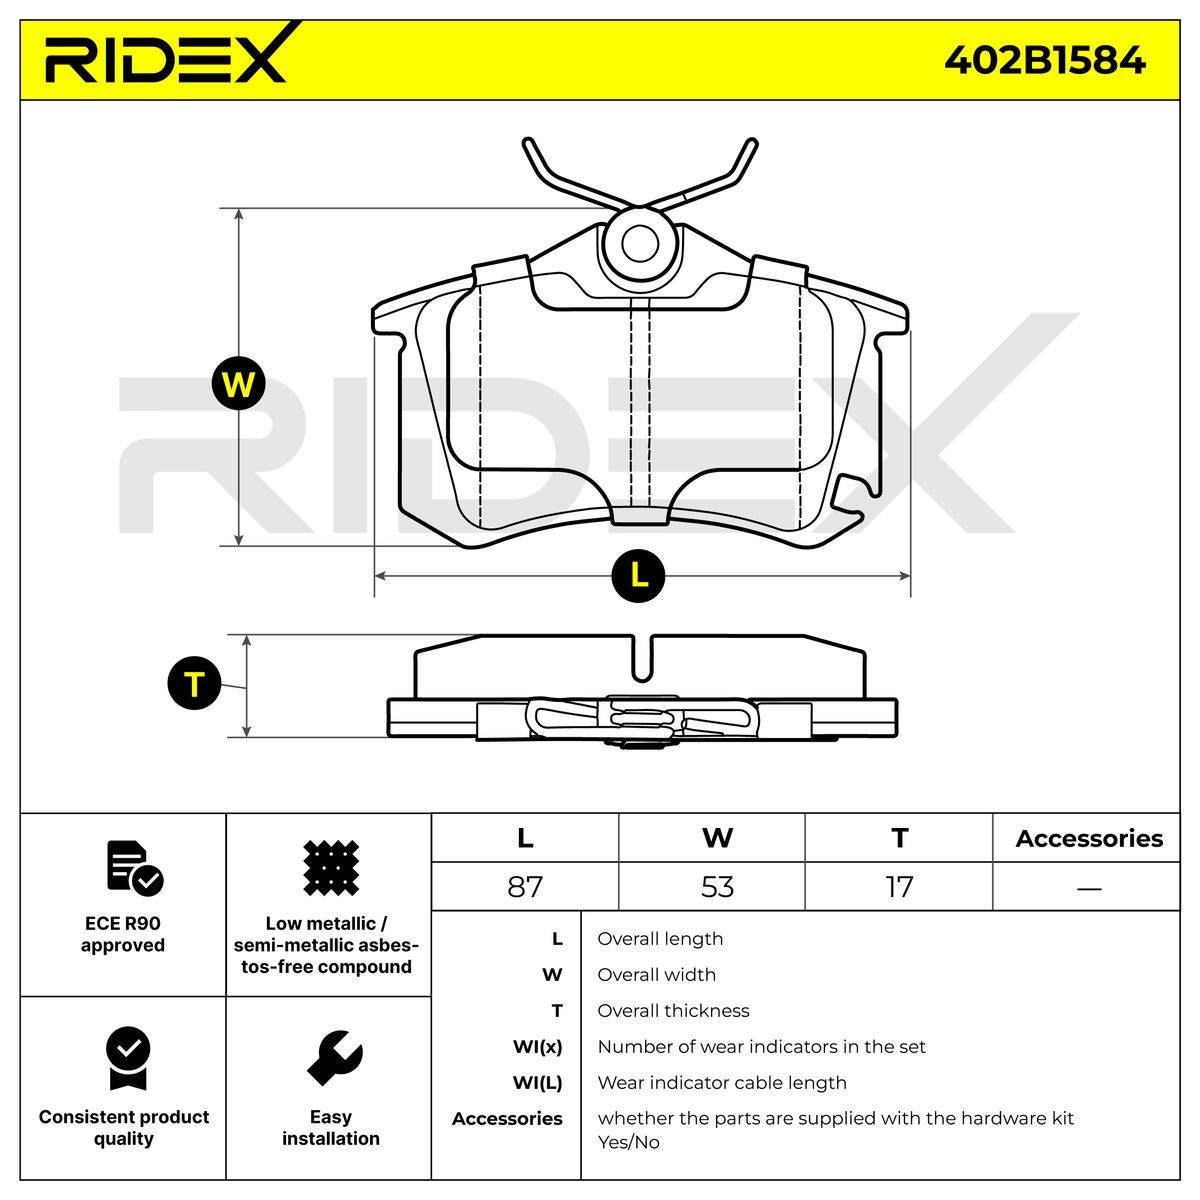 Pasticche 402B1584 RIDEX Assale posteriore, Predisposto per contatto segnalazione usura